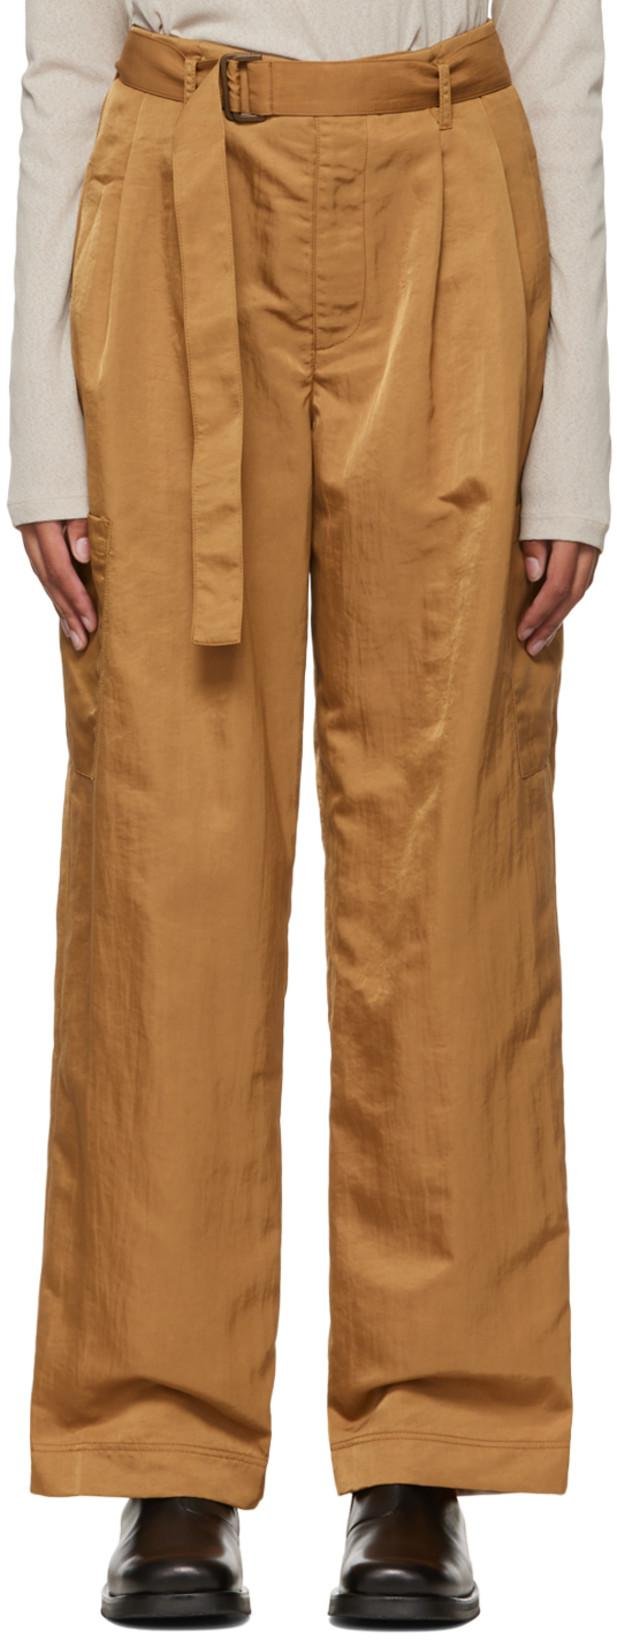 Tan Cinch Belt Trousers by DEVEAUX NEW YORK